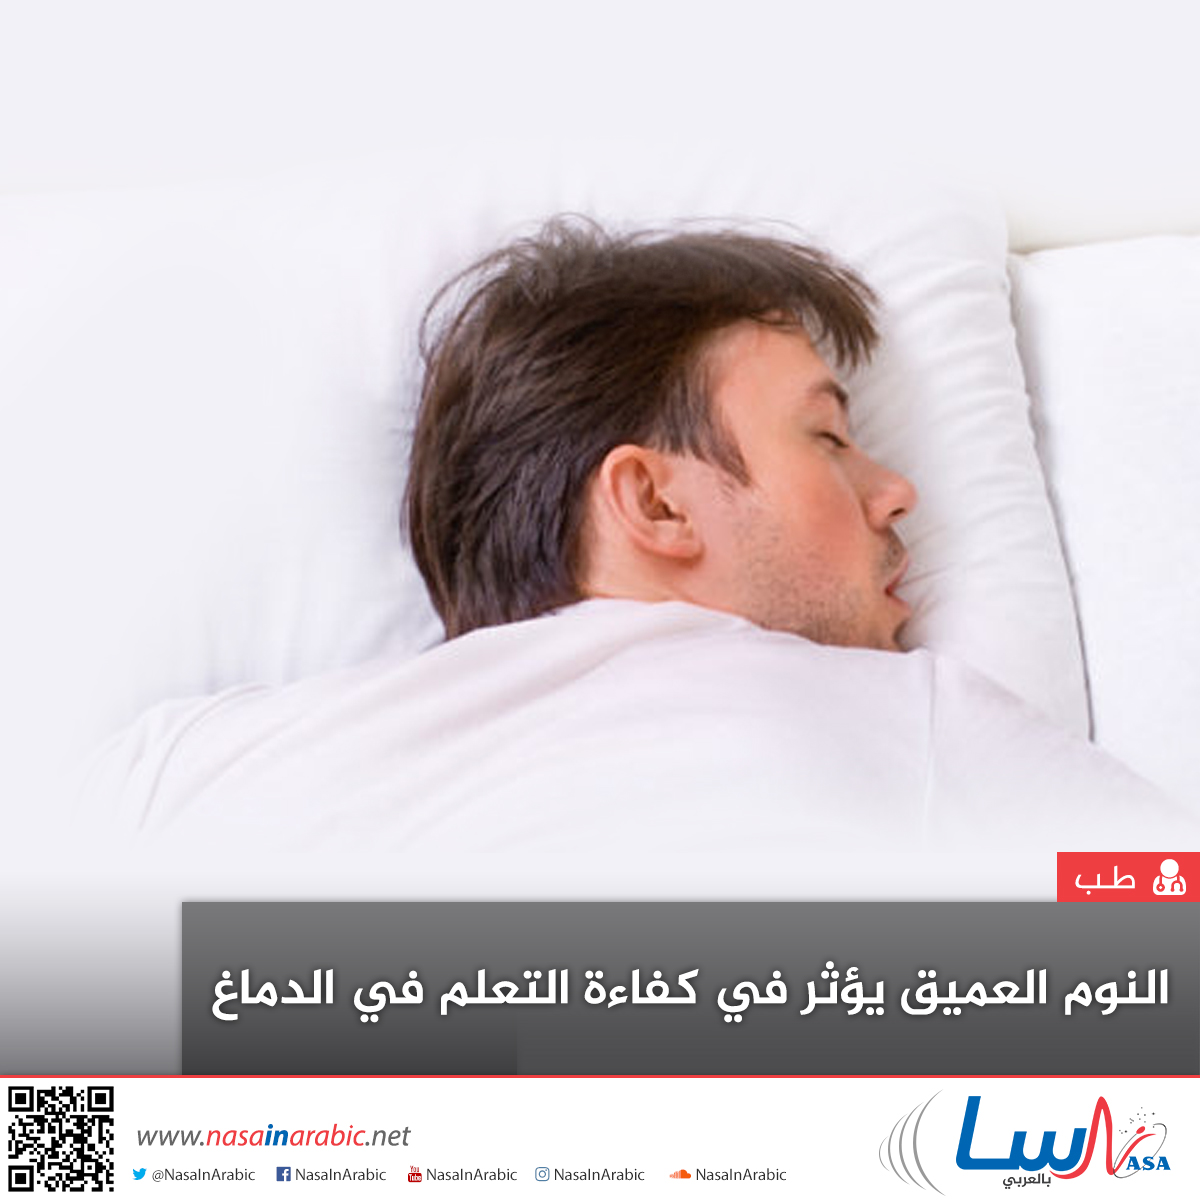 النوم العميق يؤثر في كفاءة التعلم في الدماغ